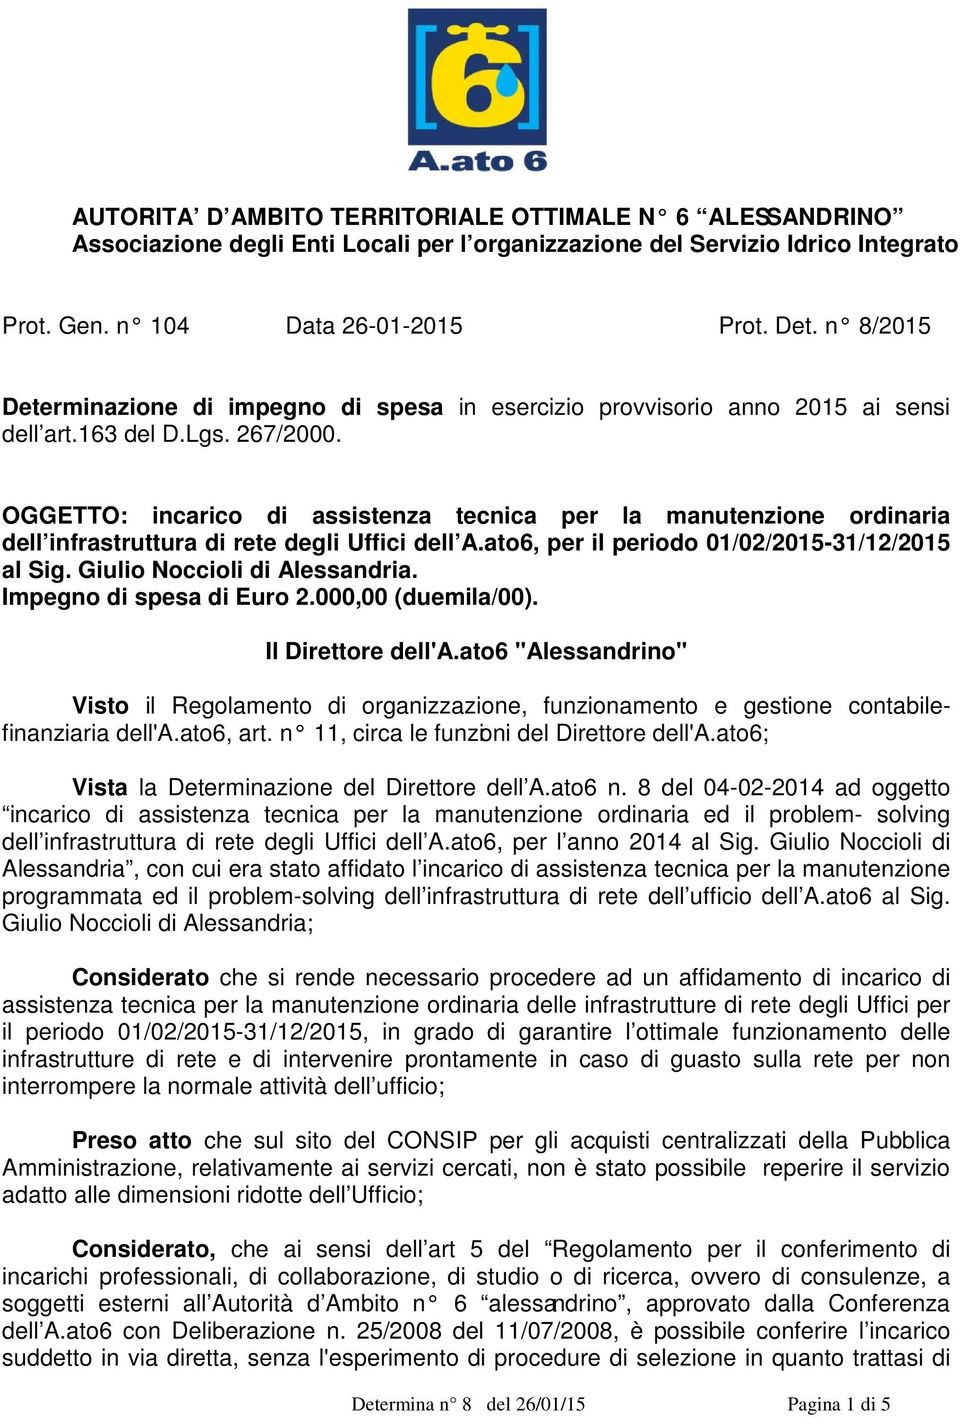 OGGETTO: incarico di assistenza tecnica per la manutenzione ordinaria dell infrastruttura di rete degli Uffici dell A.ato6, per il periodo 01/02/2015-31/12/2015 al Sig. Giulio Noccioli di Alessandria.